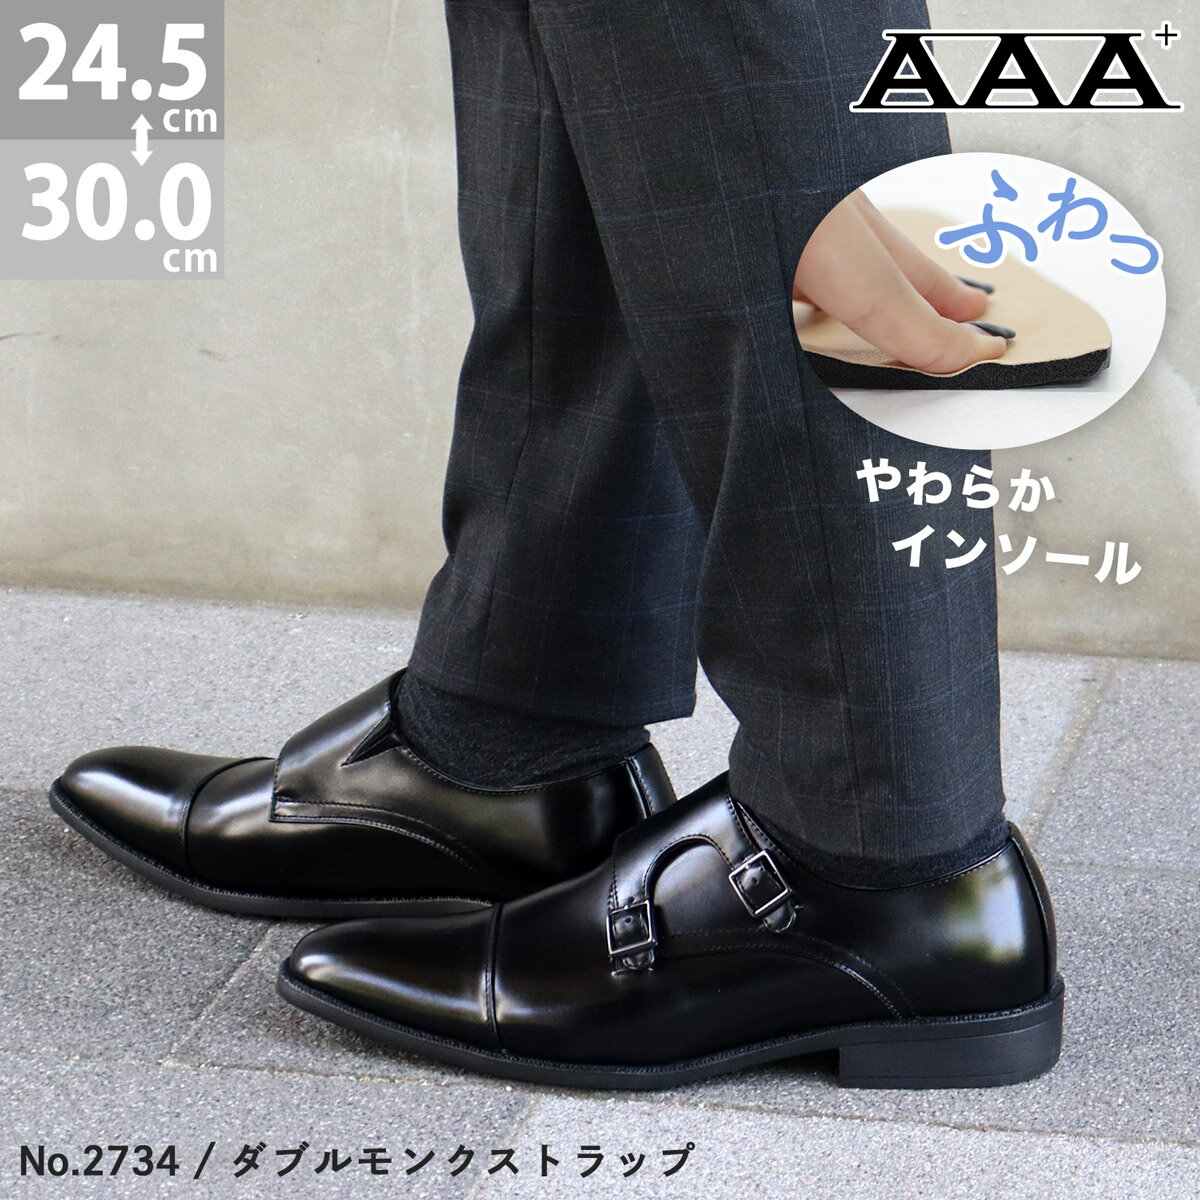 ビジネスシューズ メンズ 大きいサイズ ダブルモンクストラップ 革靴 レザー インソール 衝撃吸収 軽量 3cmヒール No.2734 24.5-29cm 30cm 黒 ブラック AAA+ サンエープラス